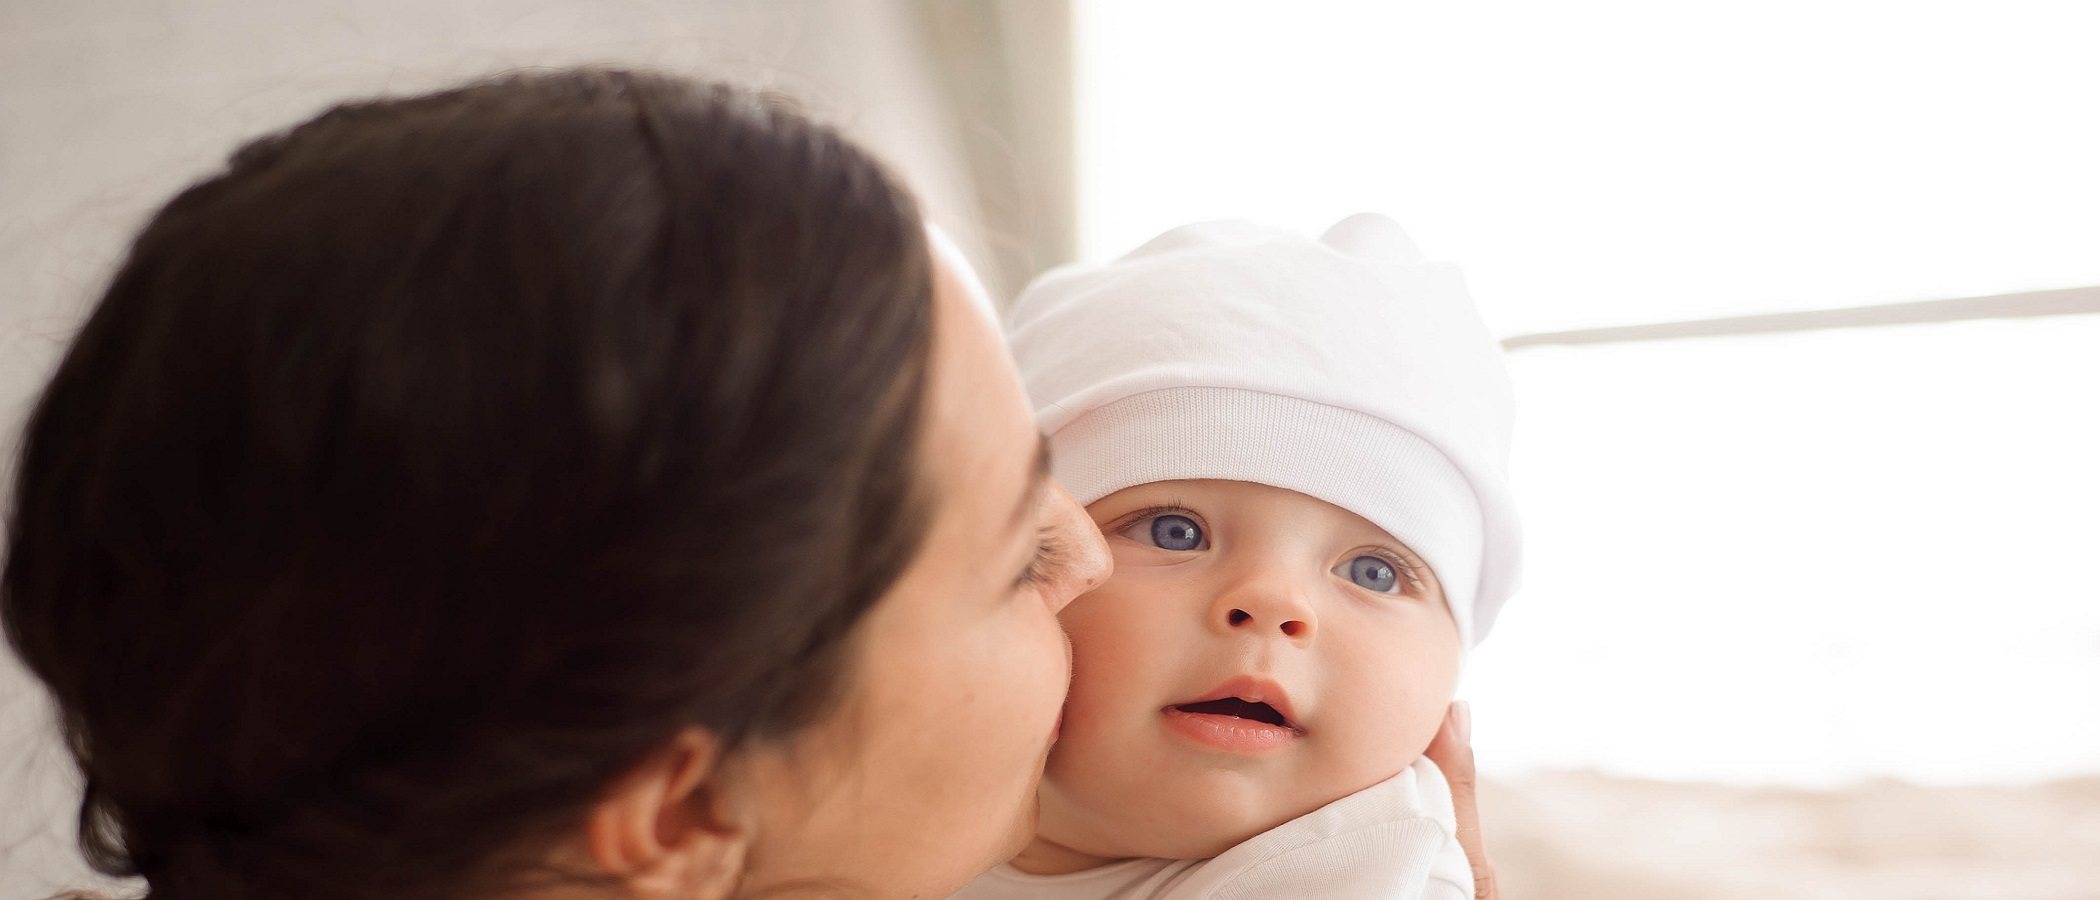 Por qué es bueno criar a los bebés en los brazos de los padres